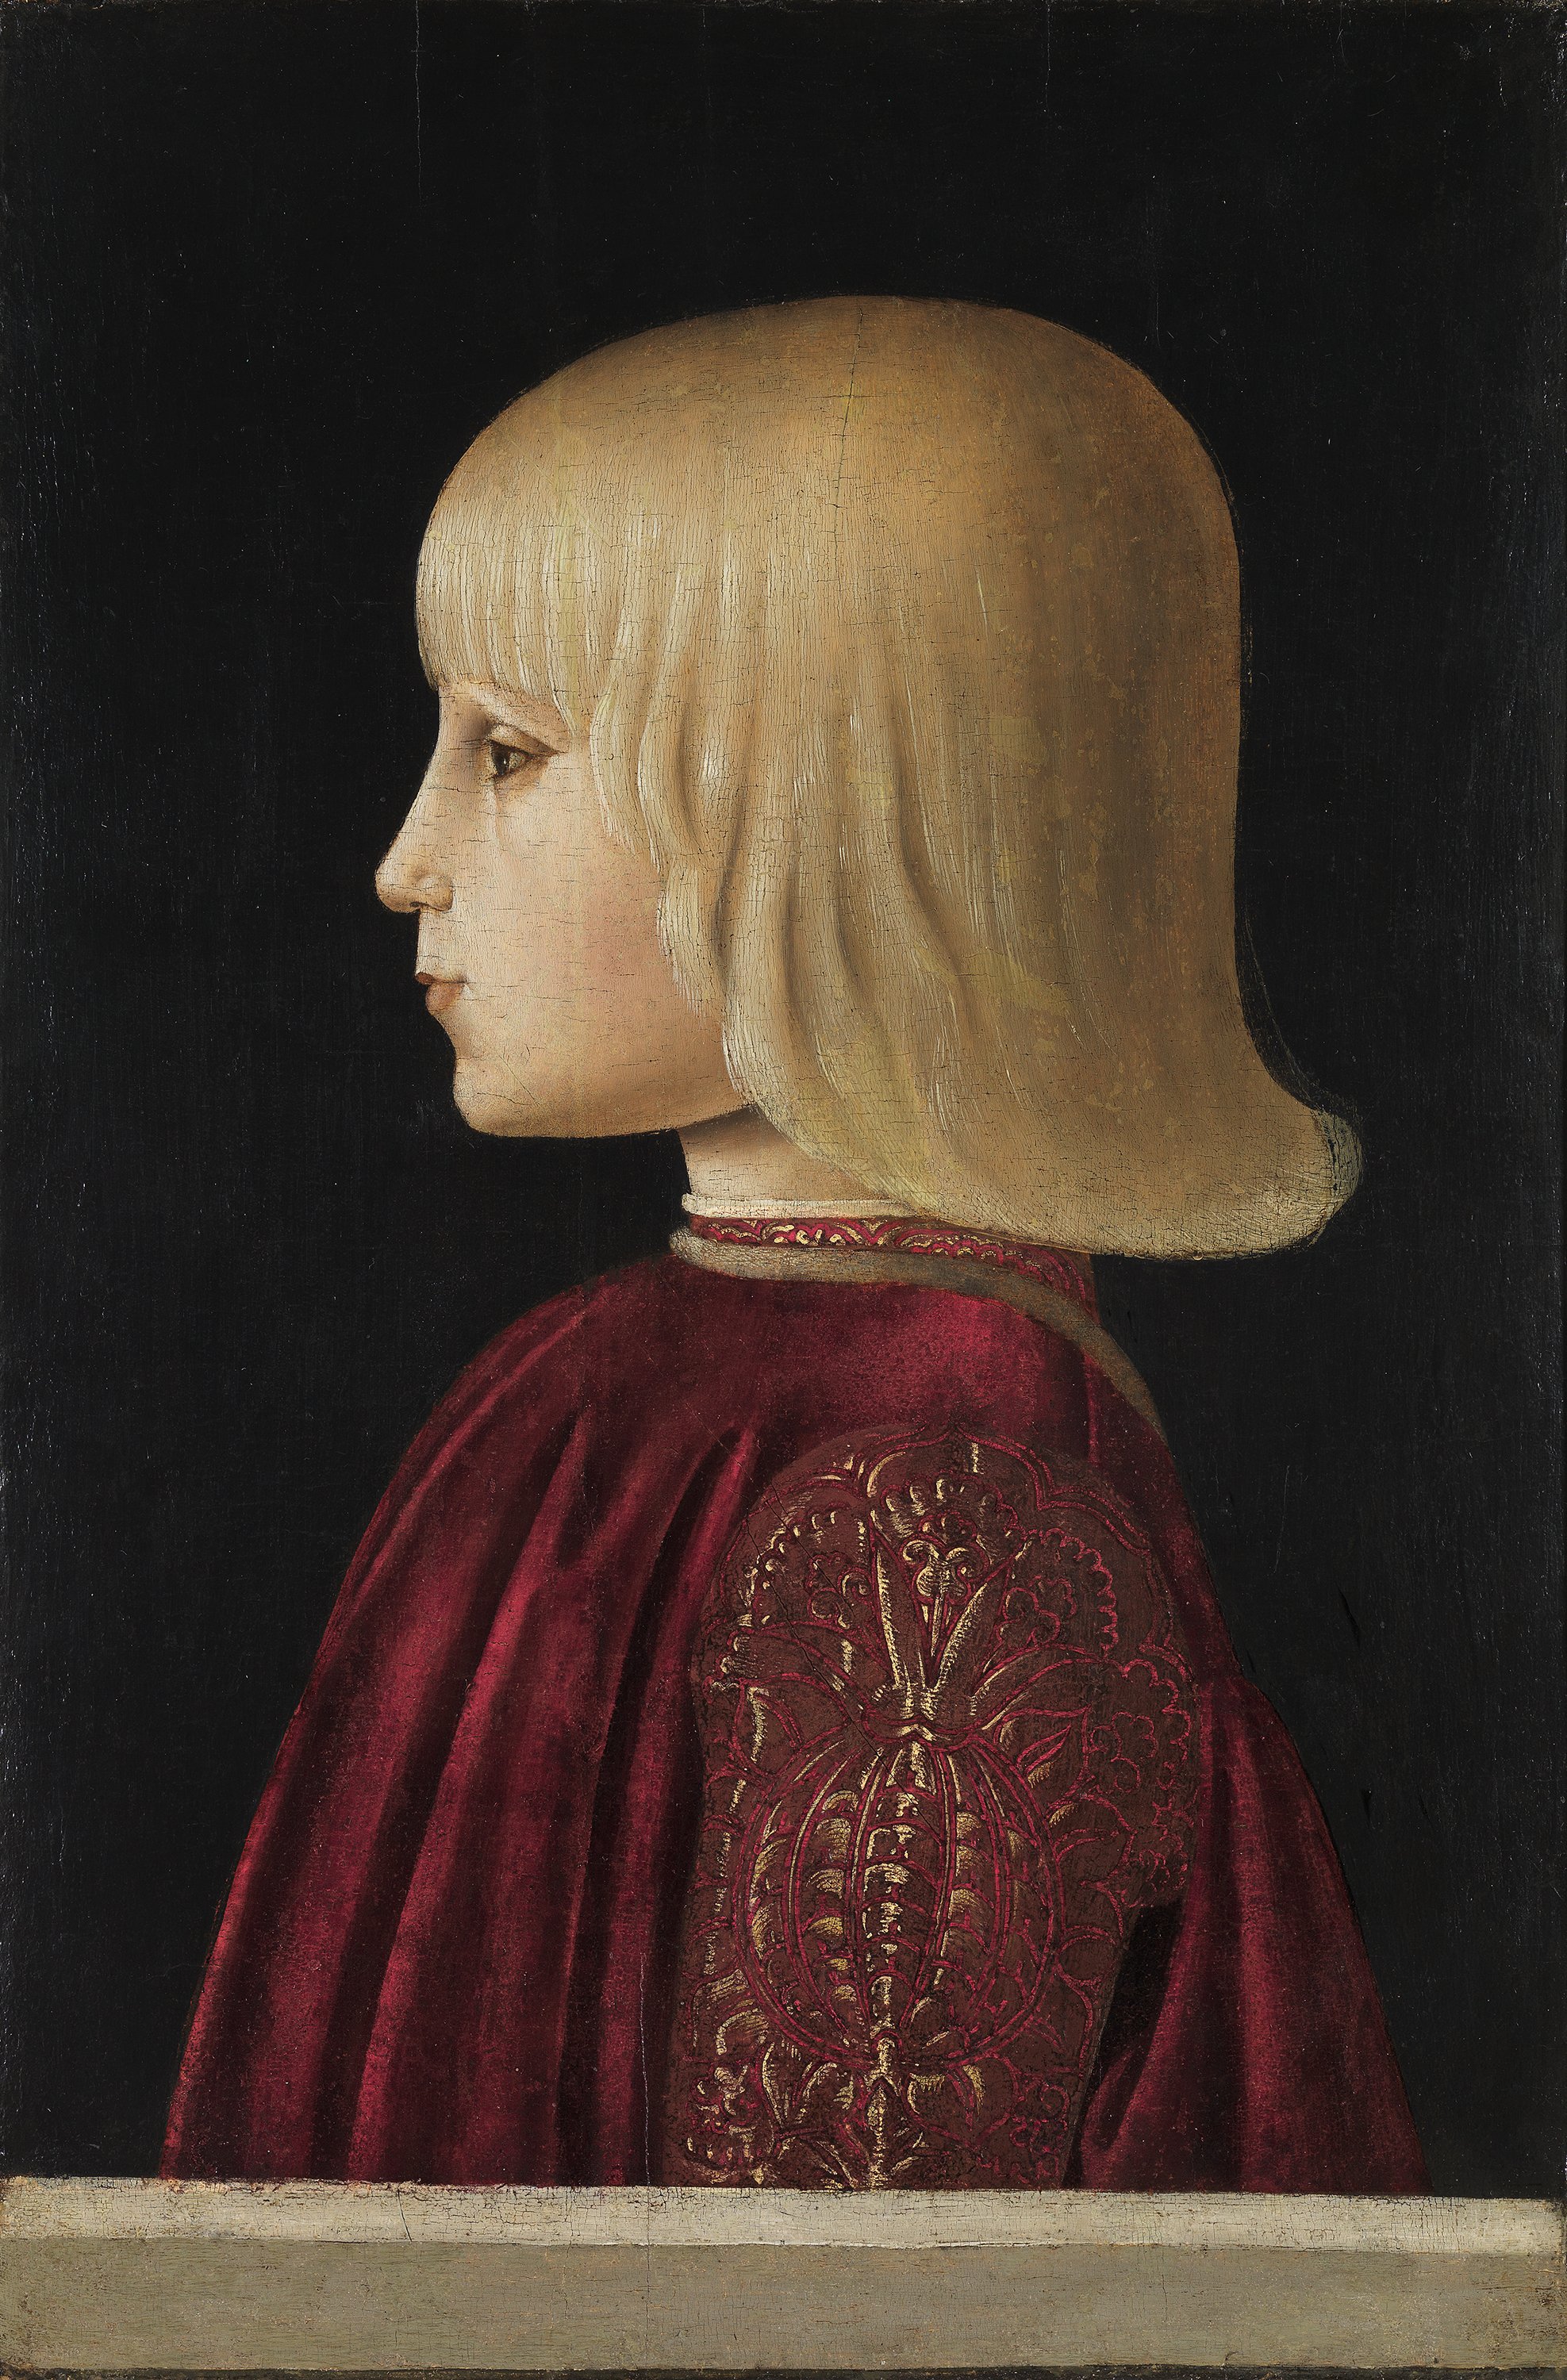 Retrato de un niño (¿Guidobaldo de Montefeltro?). Piero DELLA FRANCESCA